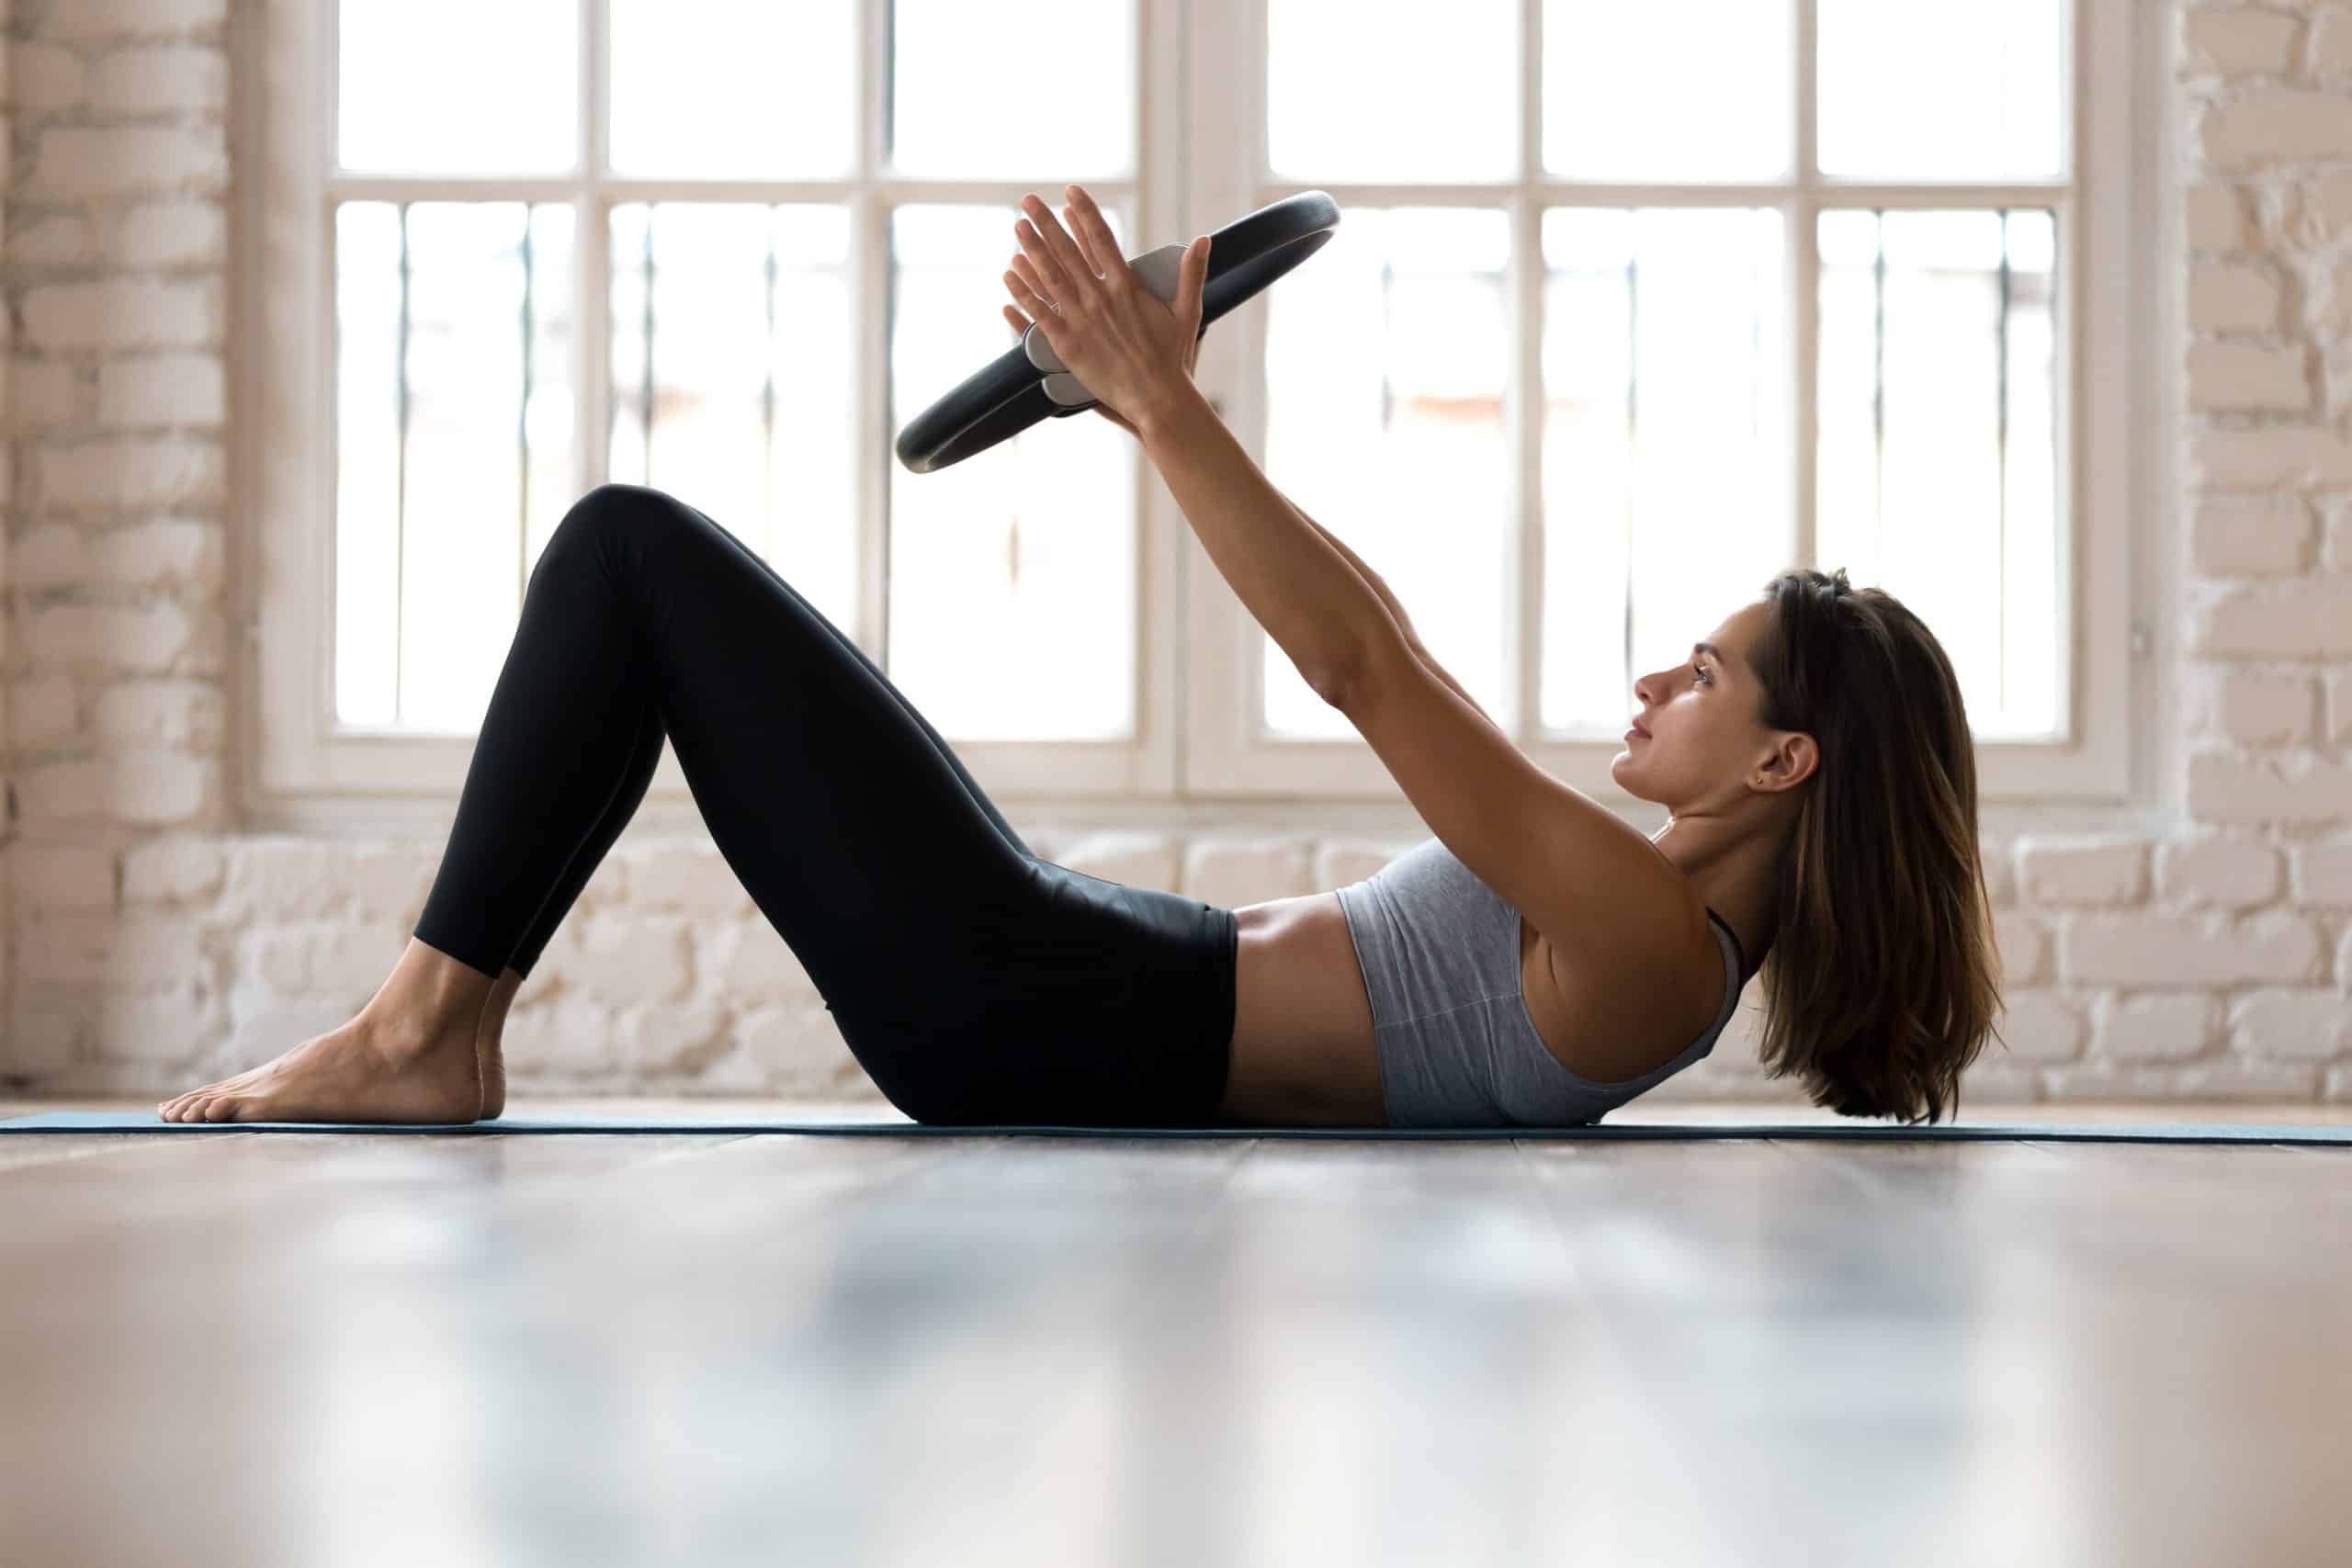 Pilates Ring Fitness Circle, Pilates Equipment Pelvic Floor Muscle  Strengthener for Women, Thigh Master Leg Exerciser Workout for Women  Equipment